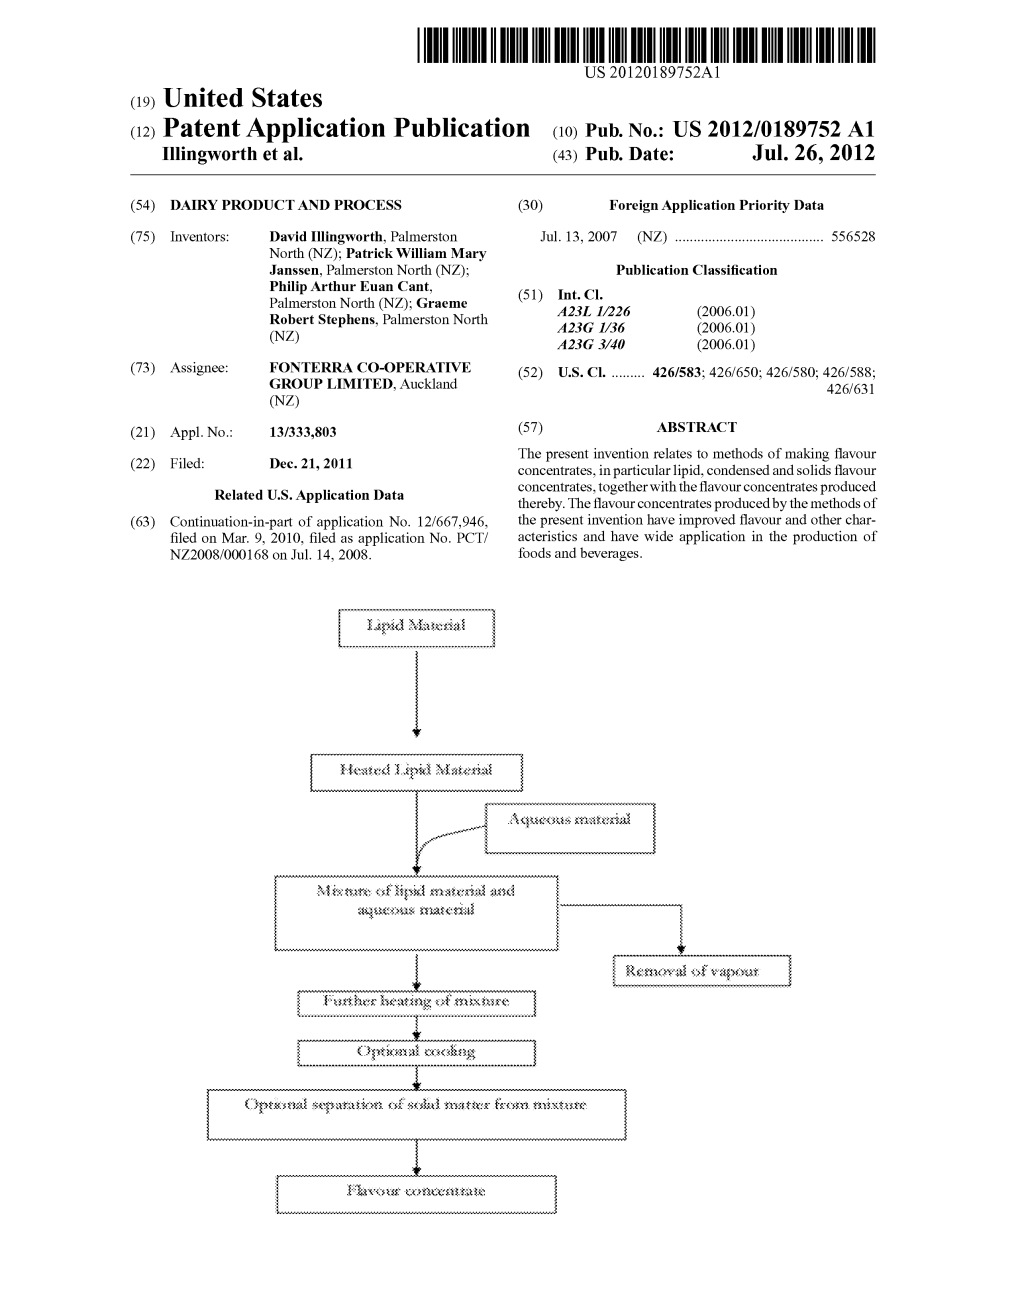 (12) Patent Application Publication (10) Pub. No.: US 2012/0189752 A1 Illingworth Et Al